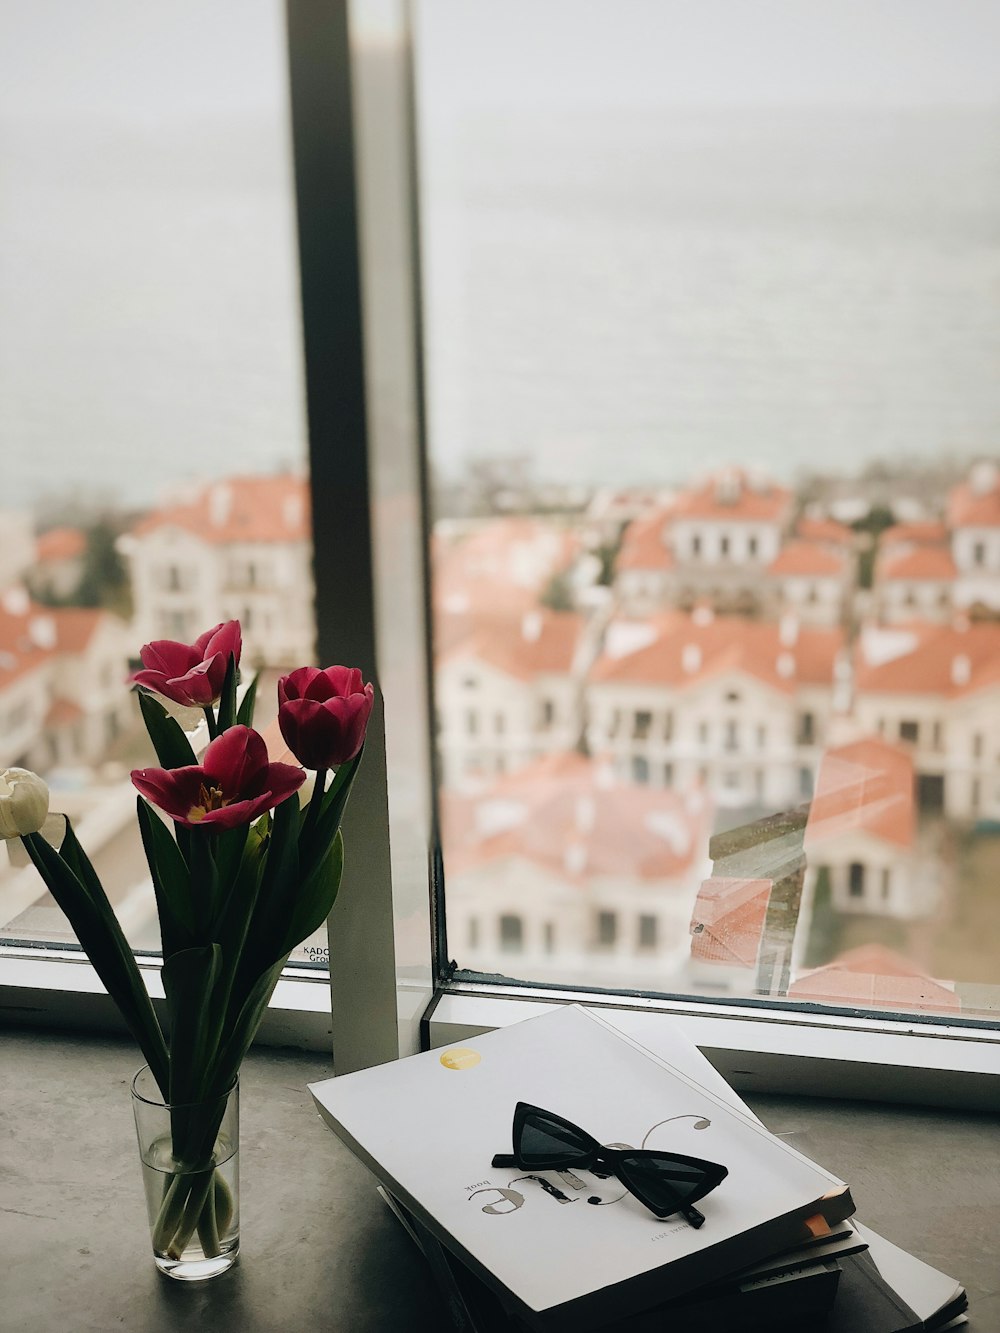 fiore di tulipano rosso vicino alla finestra di vetro